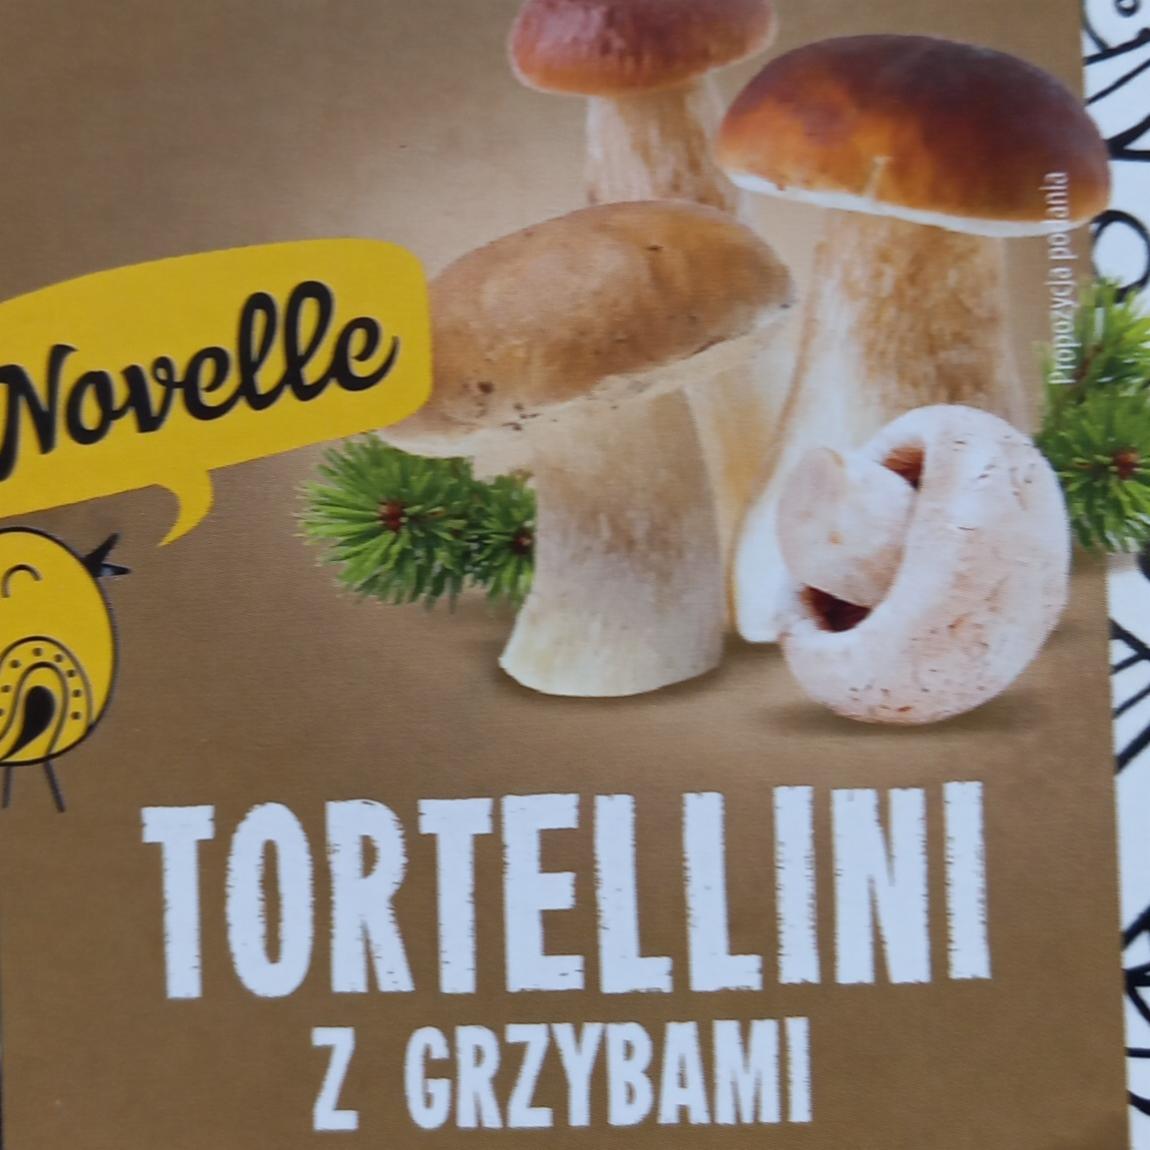 Zdjęcia - tortellini z grzybami Novelle